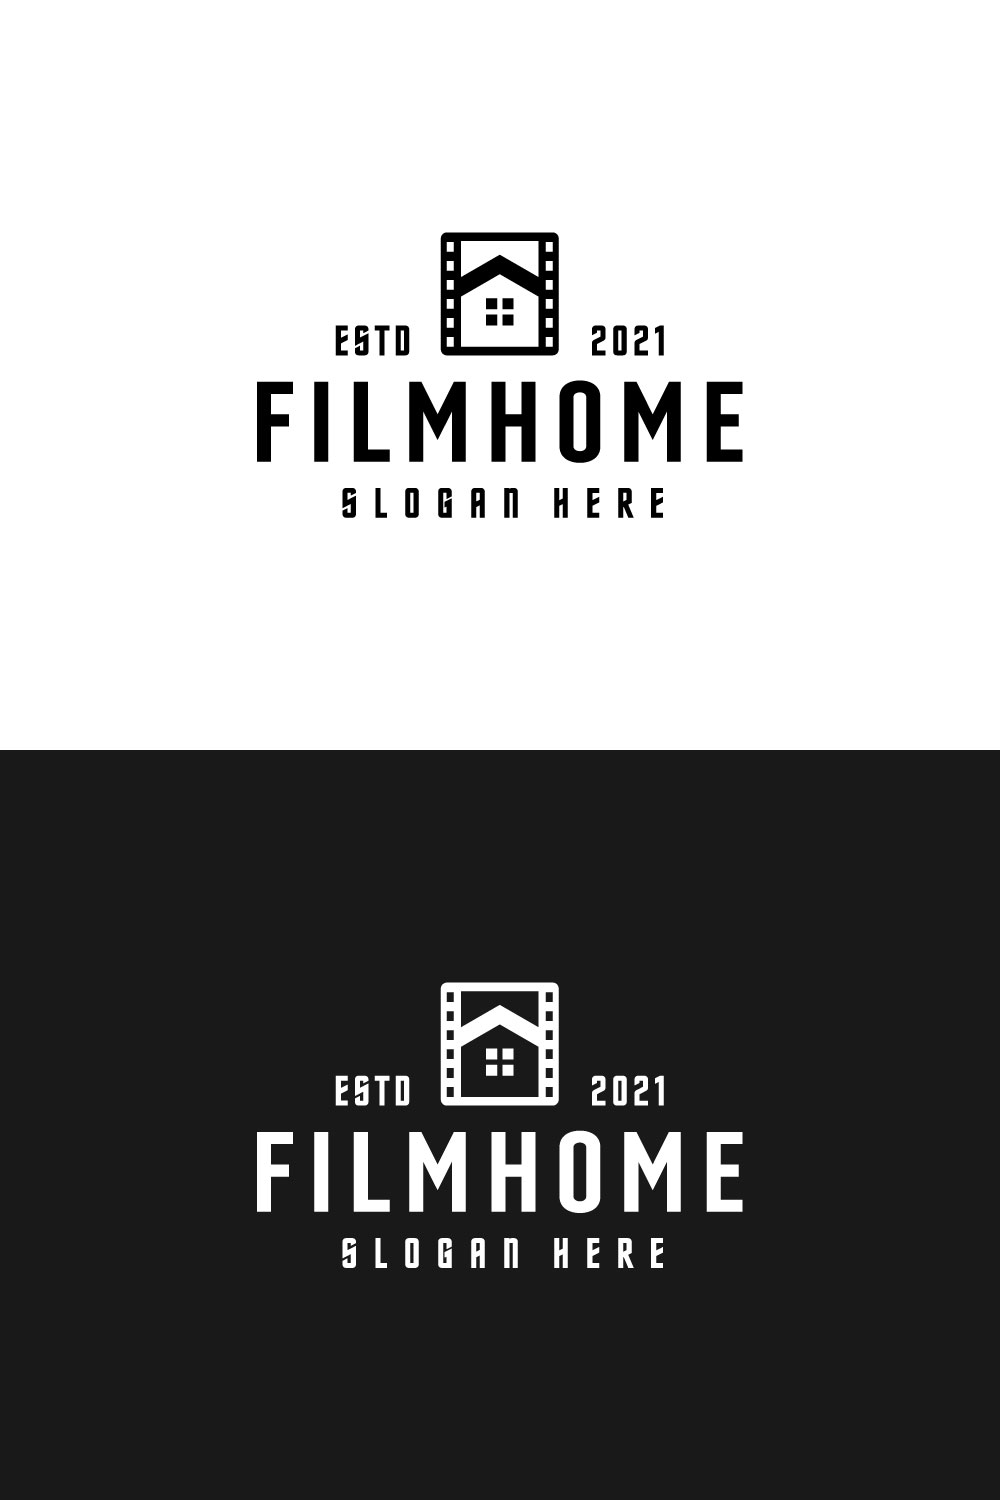 Film Home Logo Vector Design pinterest.